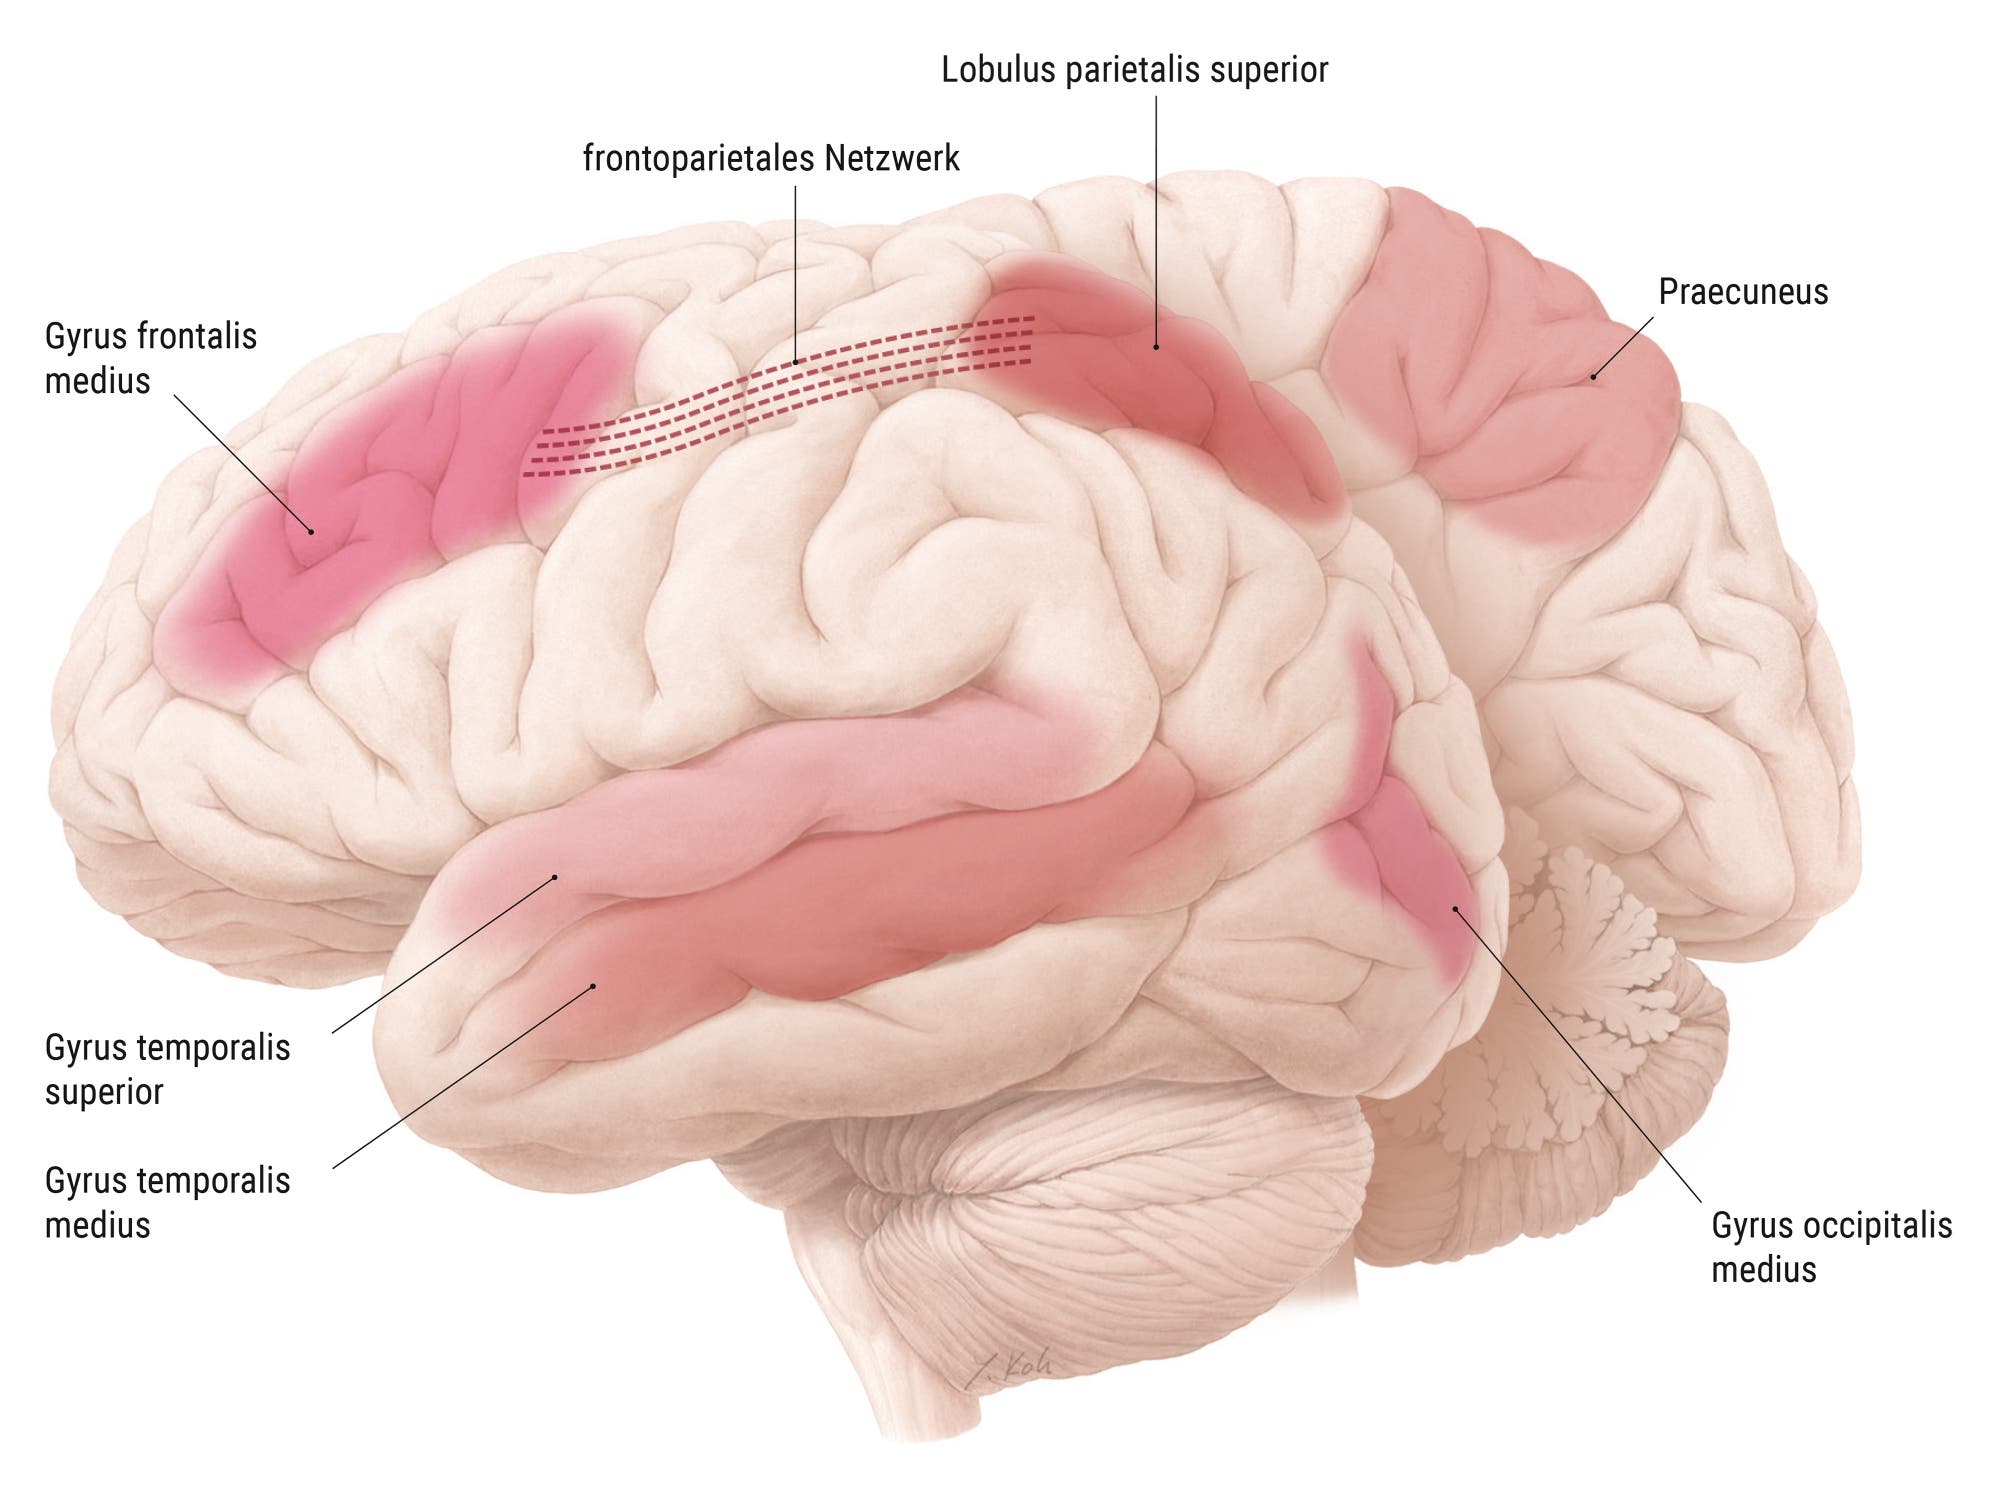 Grafik des menschlichen Gehirns, mit Markierung mehrerer Hirnregionen: Gyrus temporales superior und medius, Gyrus occipitalis medius, Praecuneus sowie frontoparietales Netzwerk